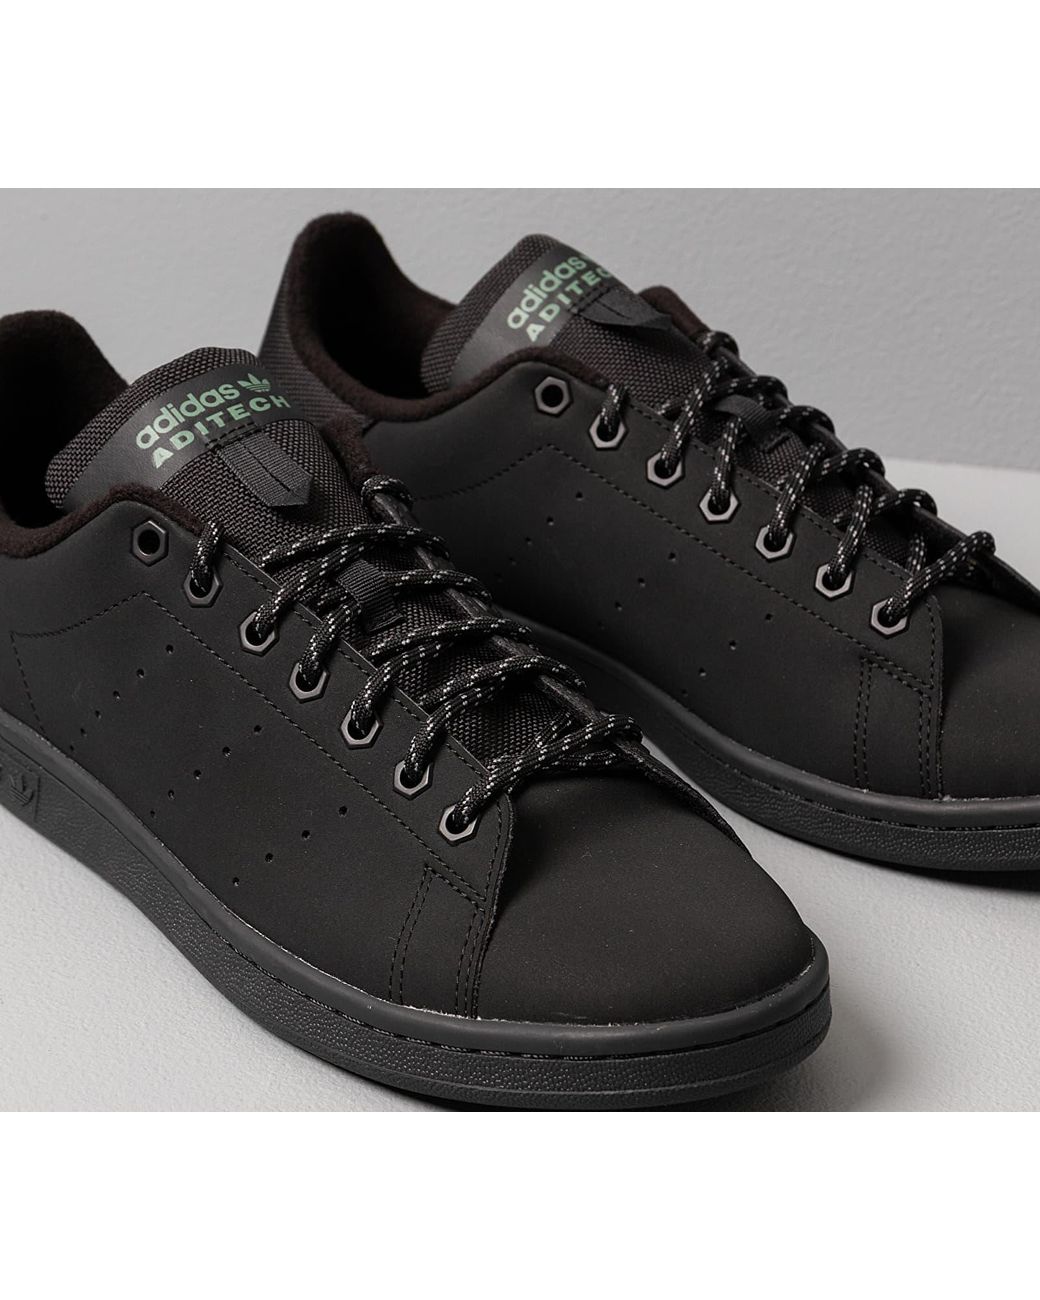 Adidas Stan Smith Core Black/ Core Black/ Trace Green di adidas Originals  da Uomo | Lyst